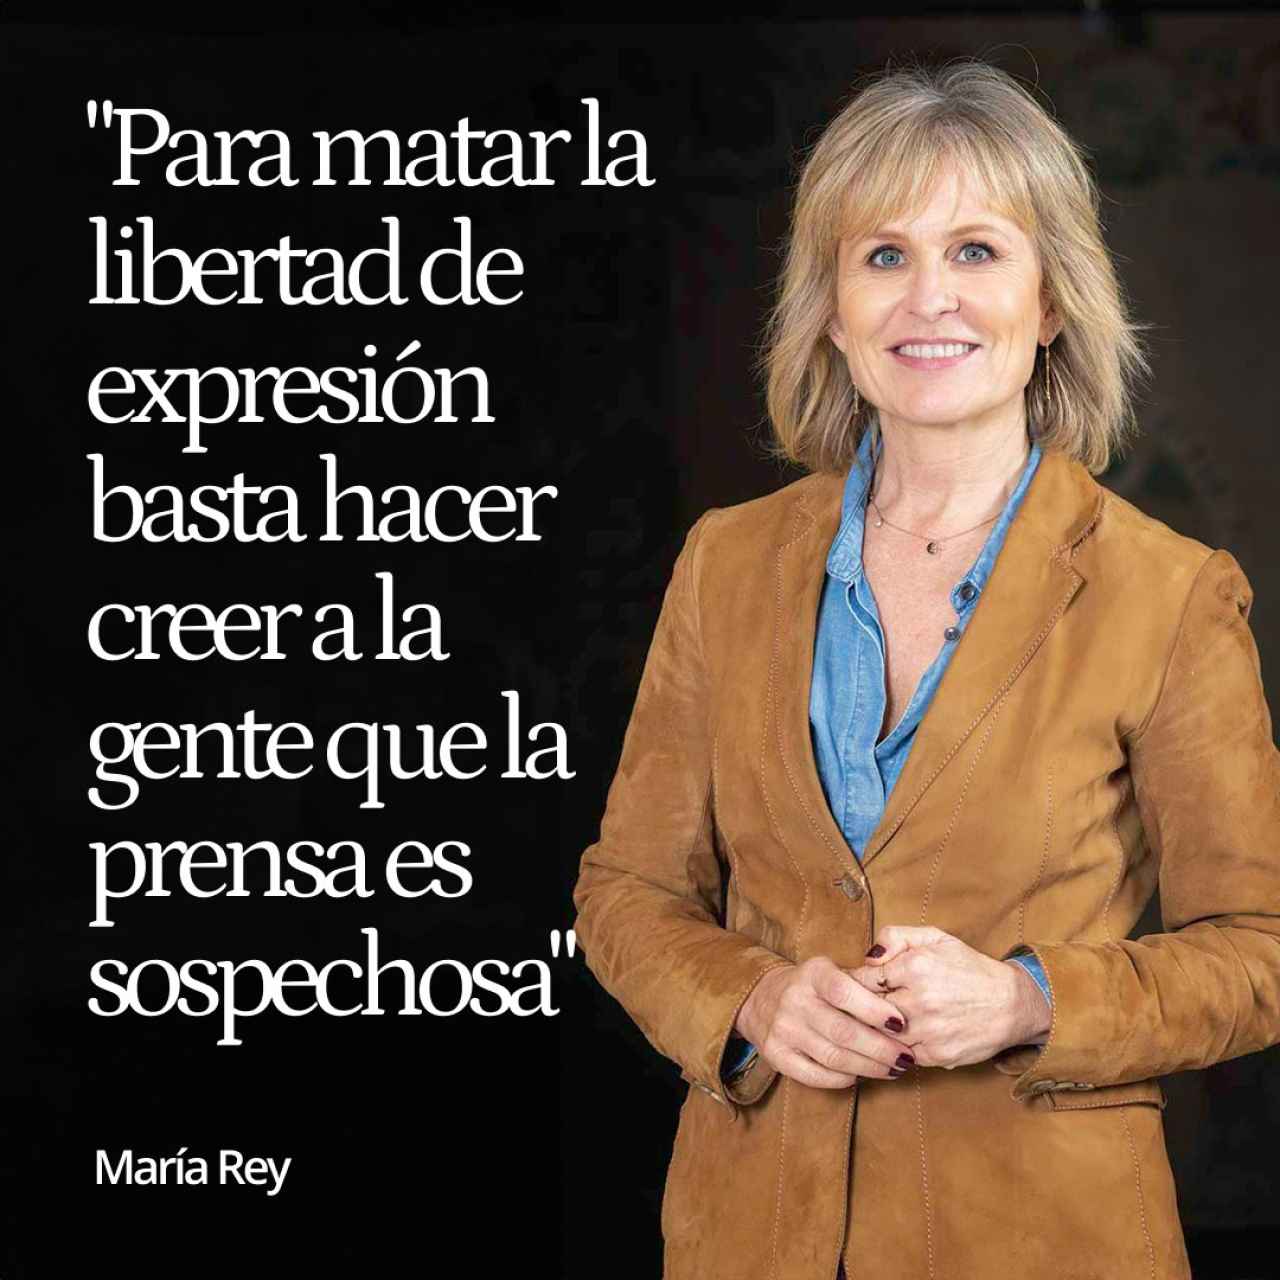 María Rey: “Para acabar con la libertad de expresión basta con convencer a la sociedad de que la prensa es sospechosa”